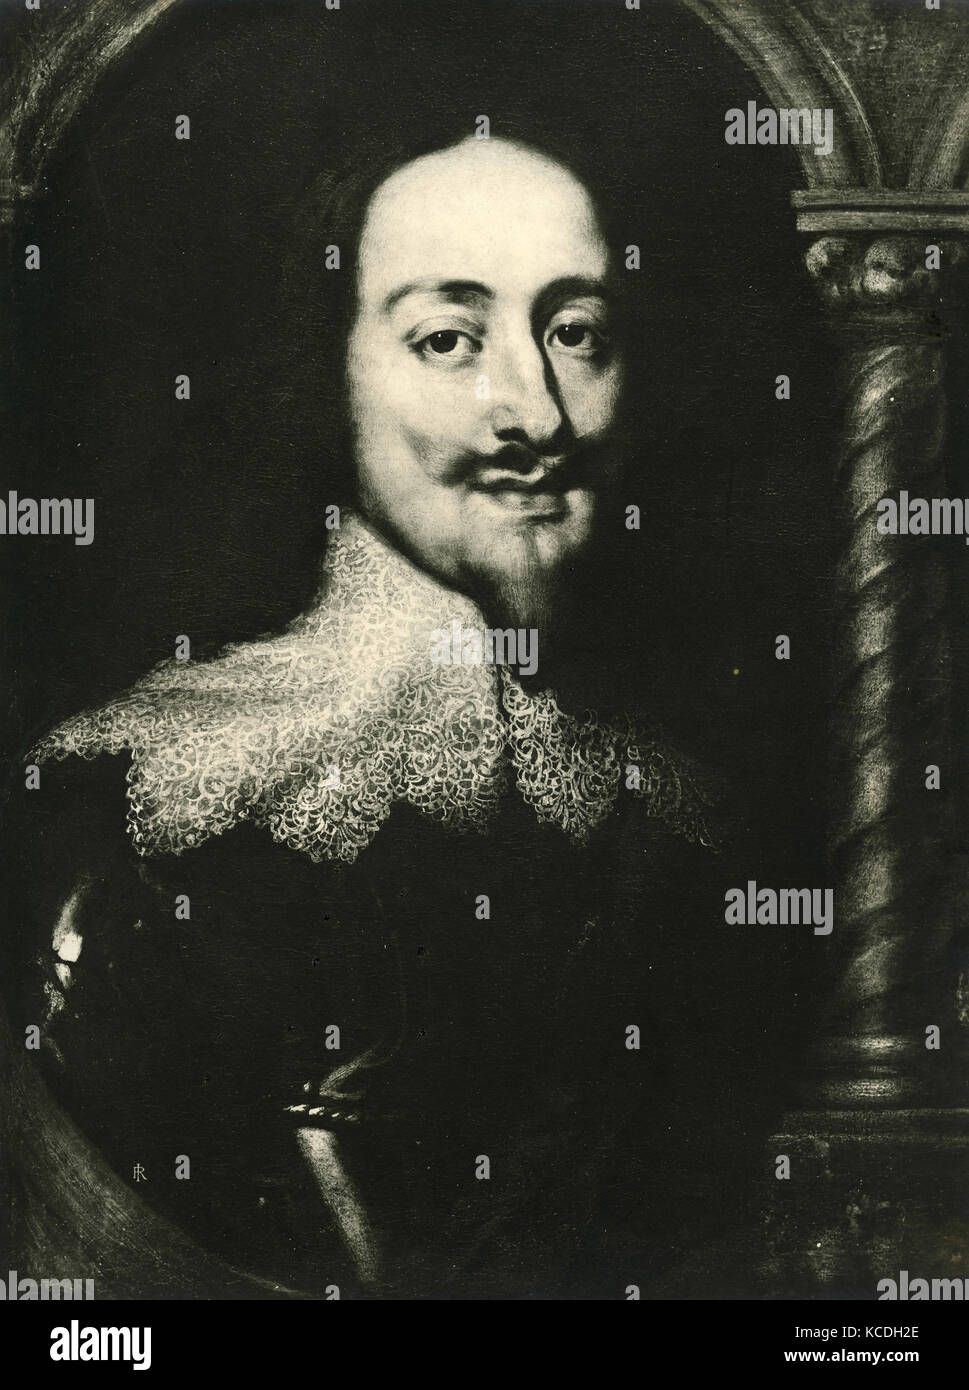 Retrato de Carlos I de Inglaterra, pintado por Anton van Dyck Foto de stock